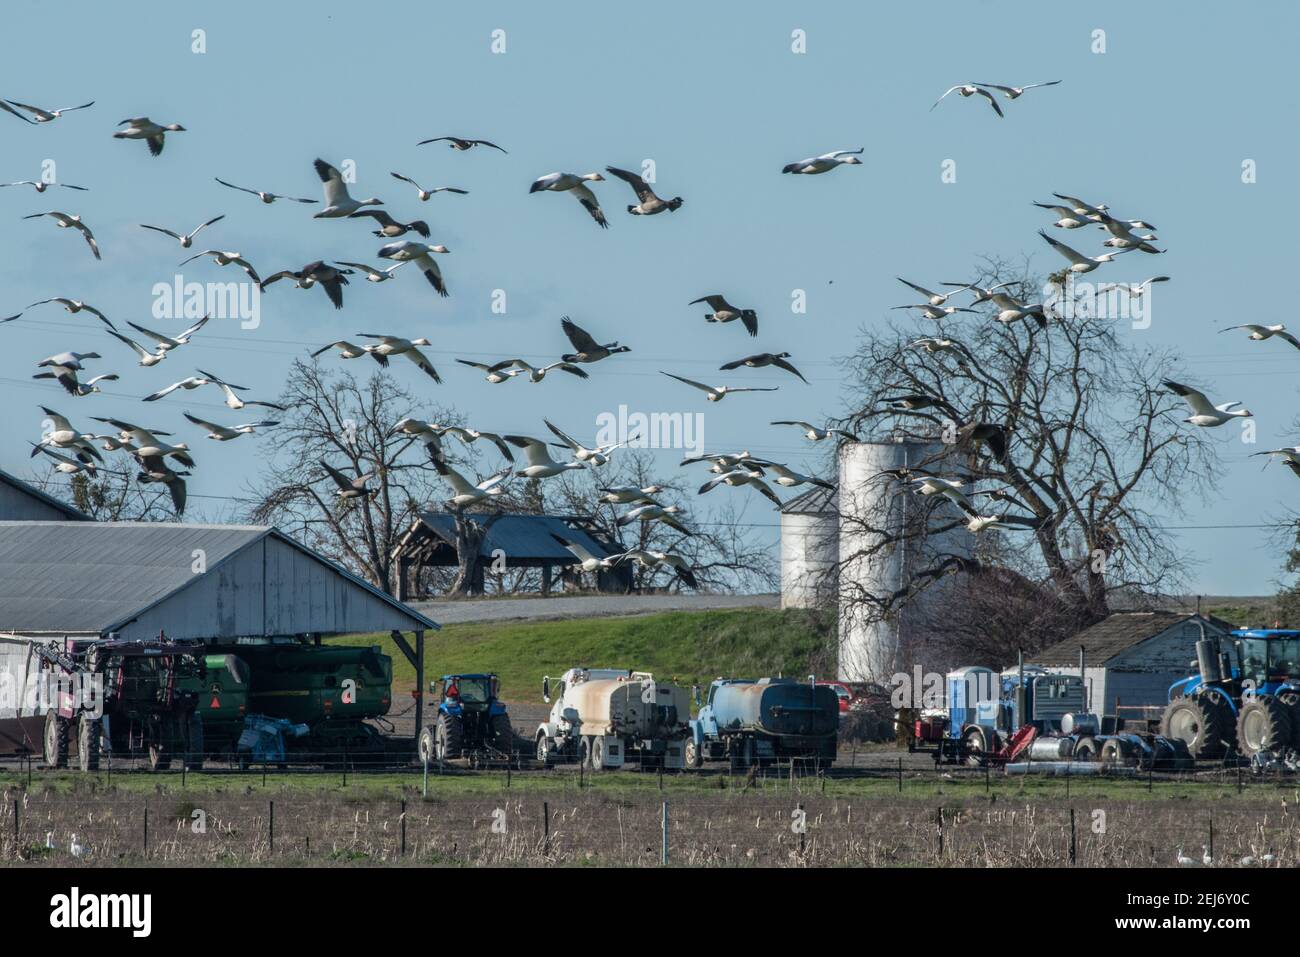 Beflockende Schneegänse (Anser caerulescens) fliegen über einen Bauernhof und Traktoren. Die Vögel koexistieren mit der menschlichen Entwicklung auf Ackerland. Stockfoto